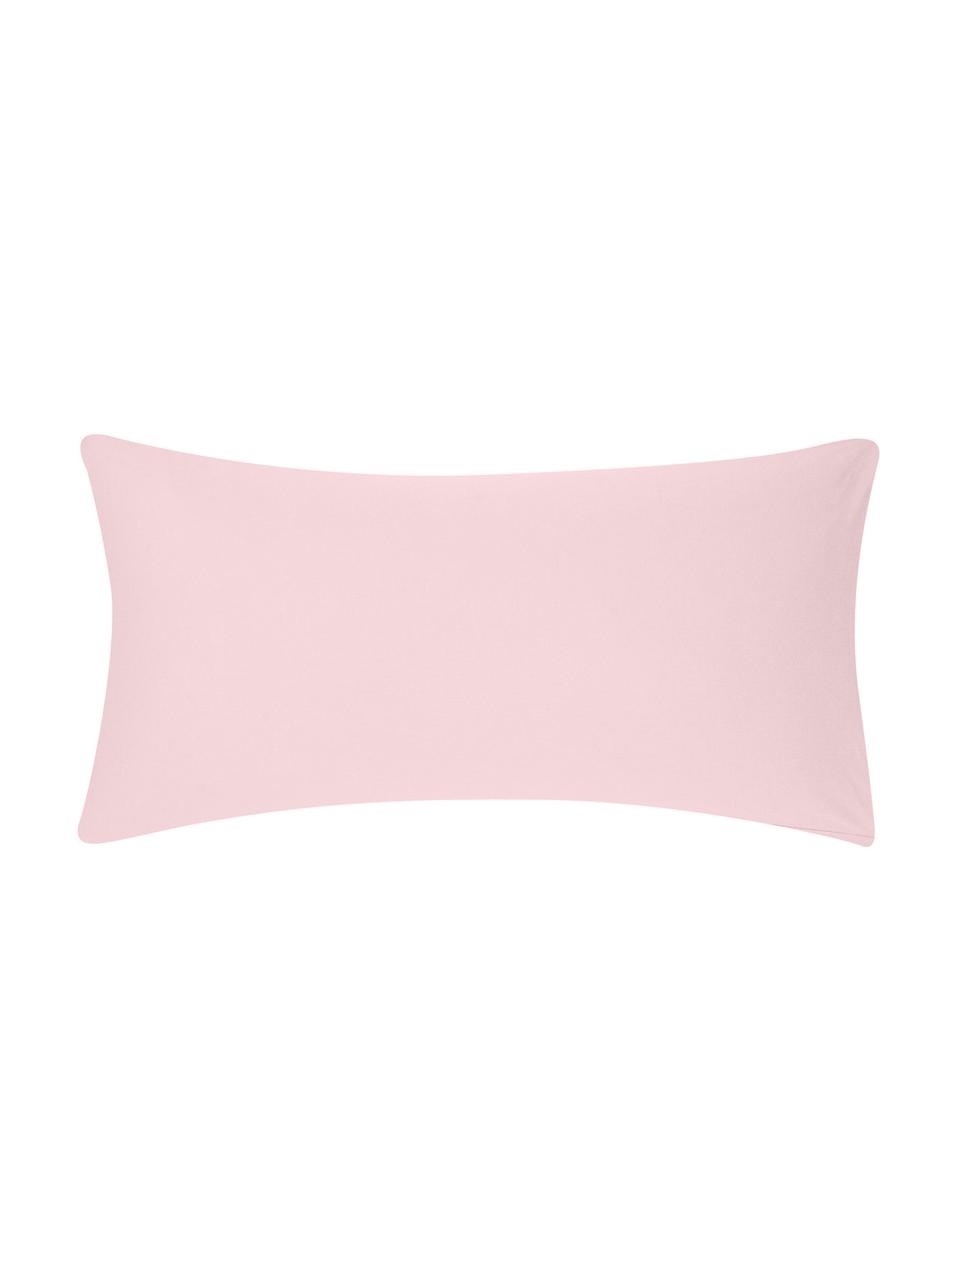 Poszewka na poduszkę z flaneli Biba, 2 szt., Blady różowy, S 40 x D 80 cm